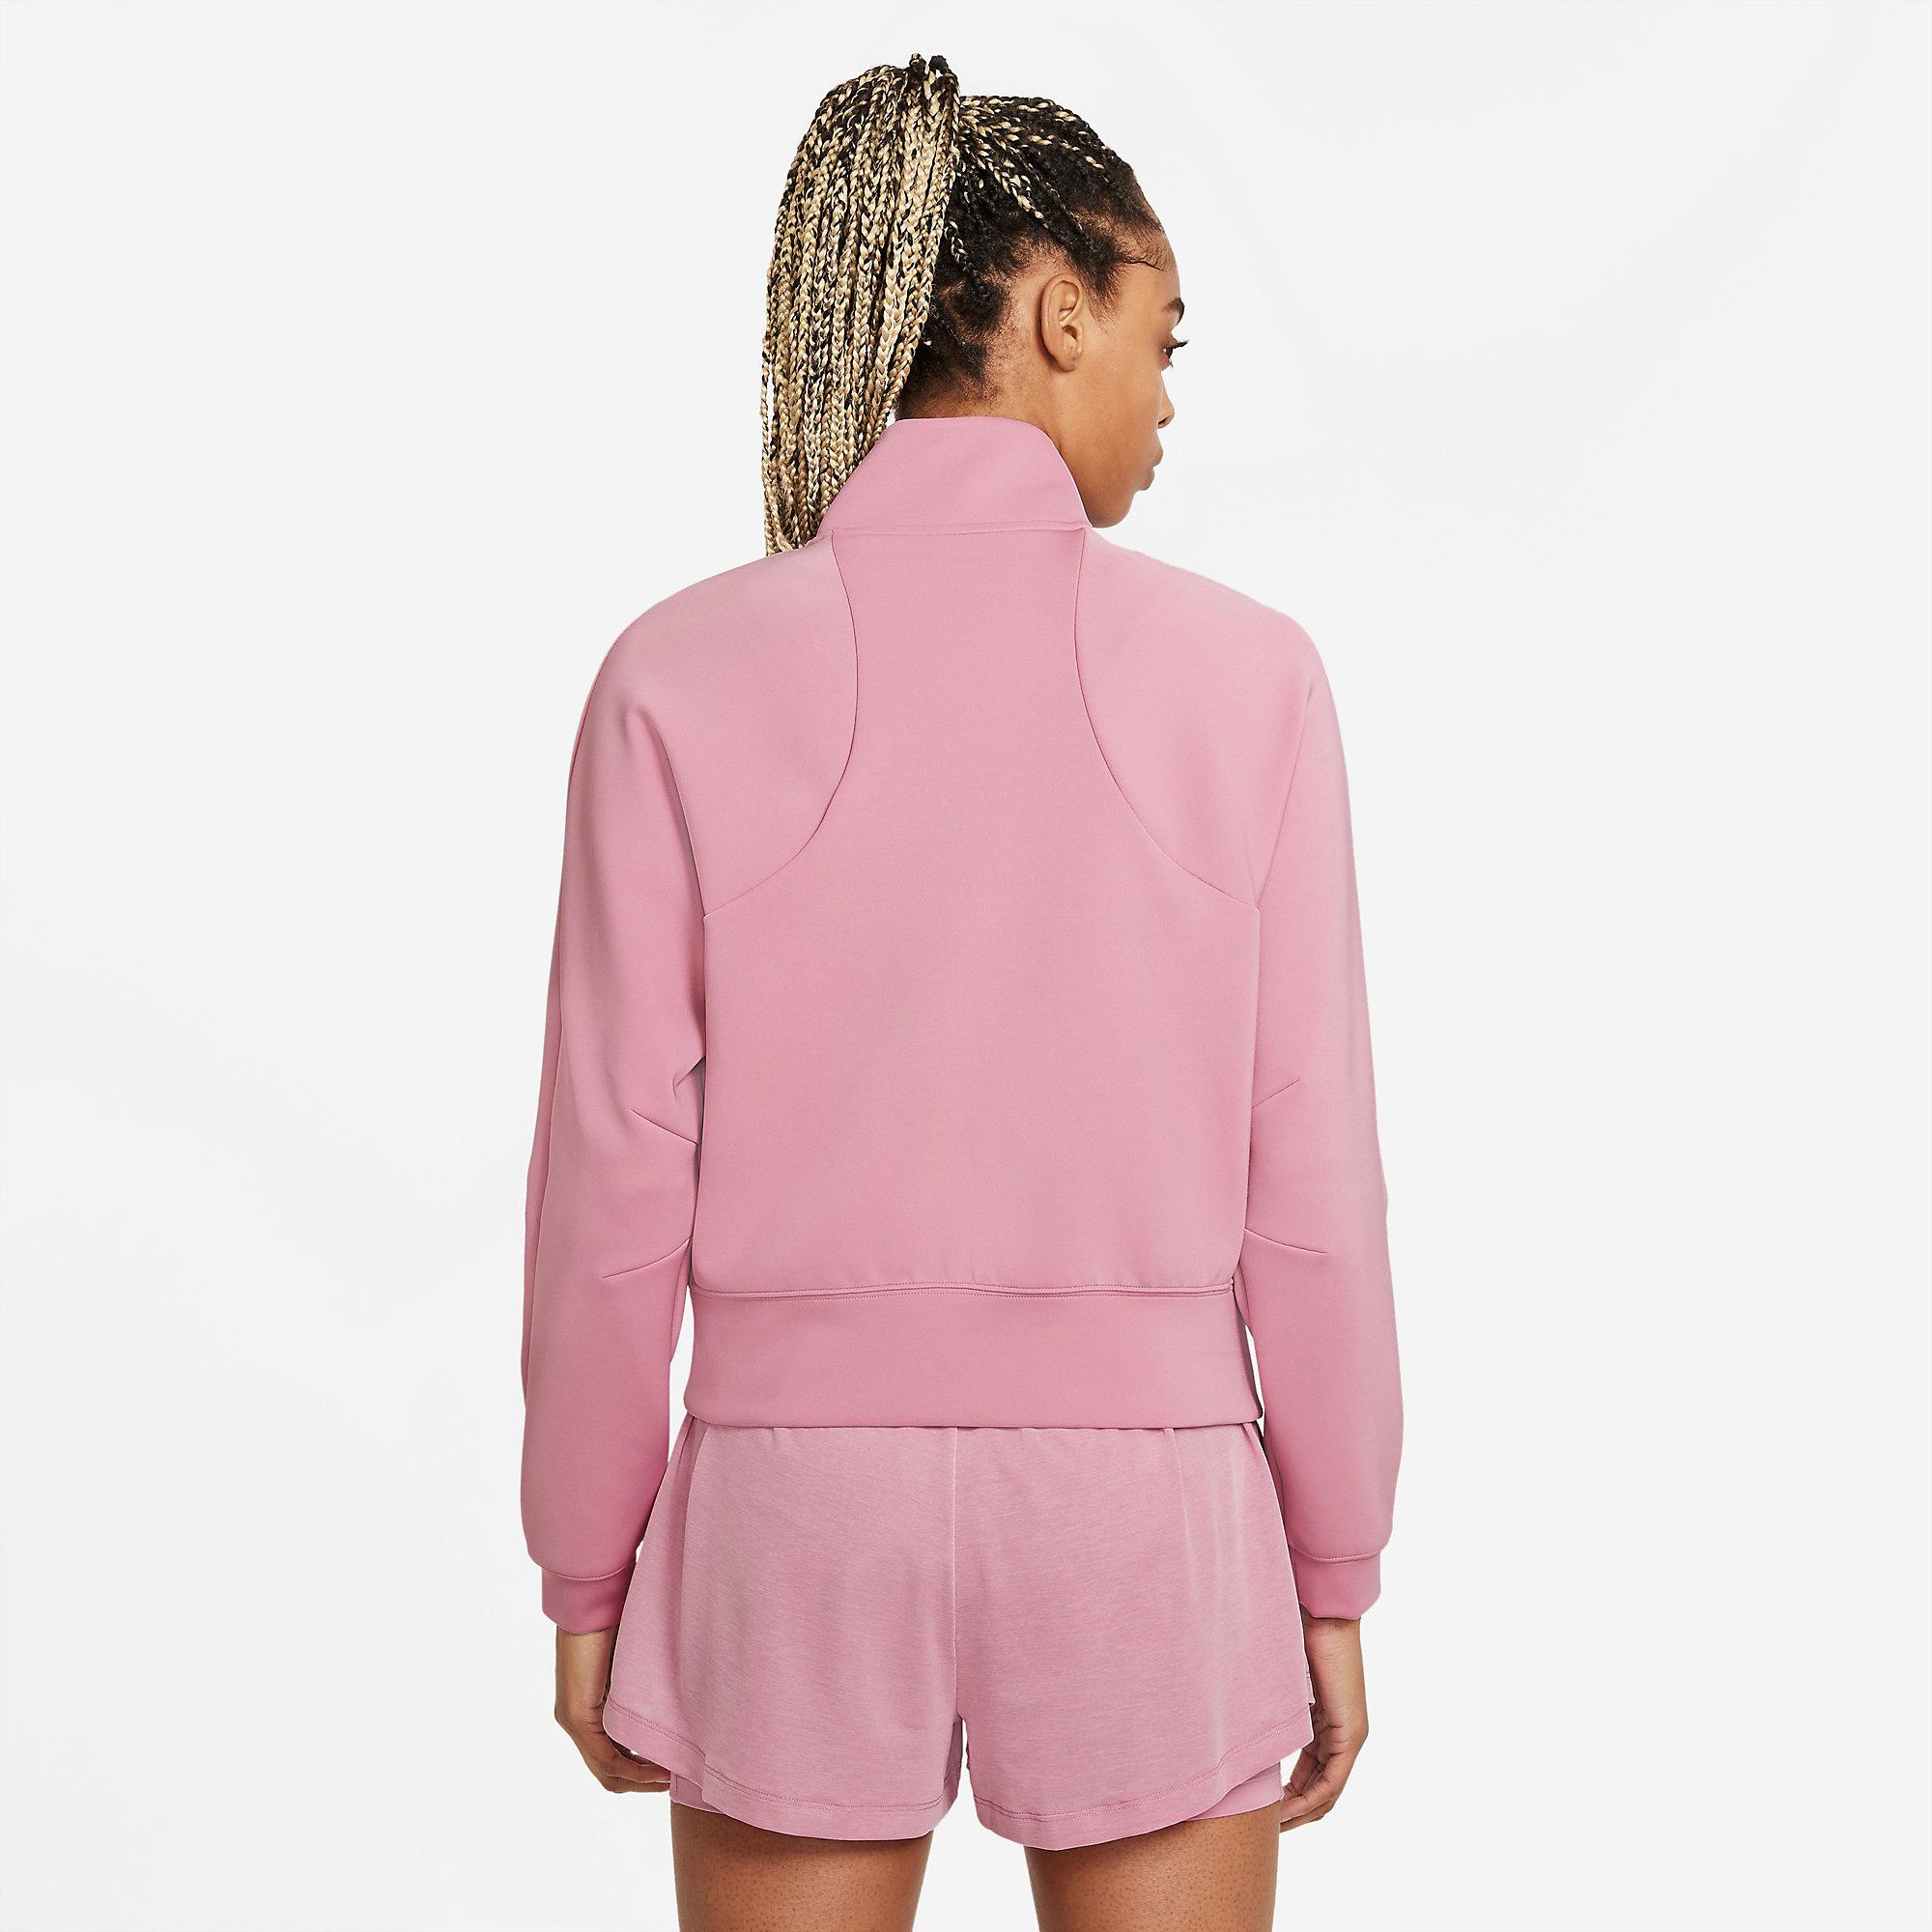 Nike Womens Full-Zip Jacket - Elemental Pink - Tennisnuts.com